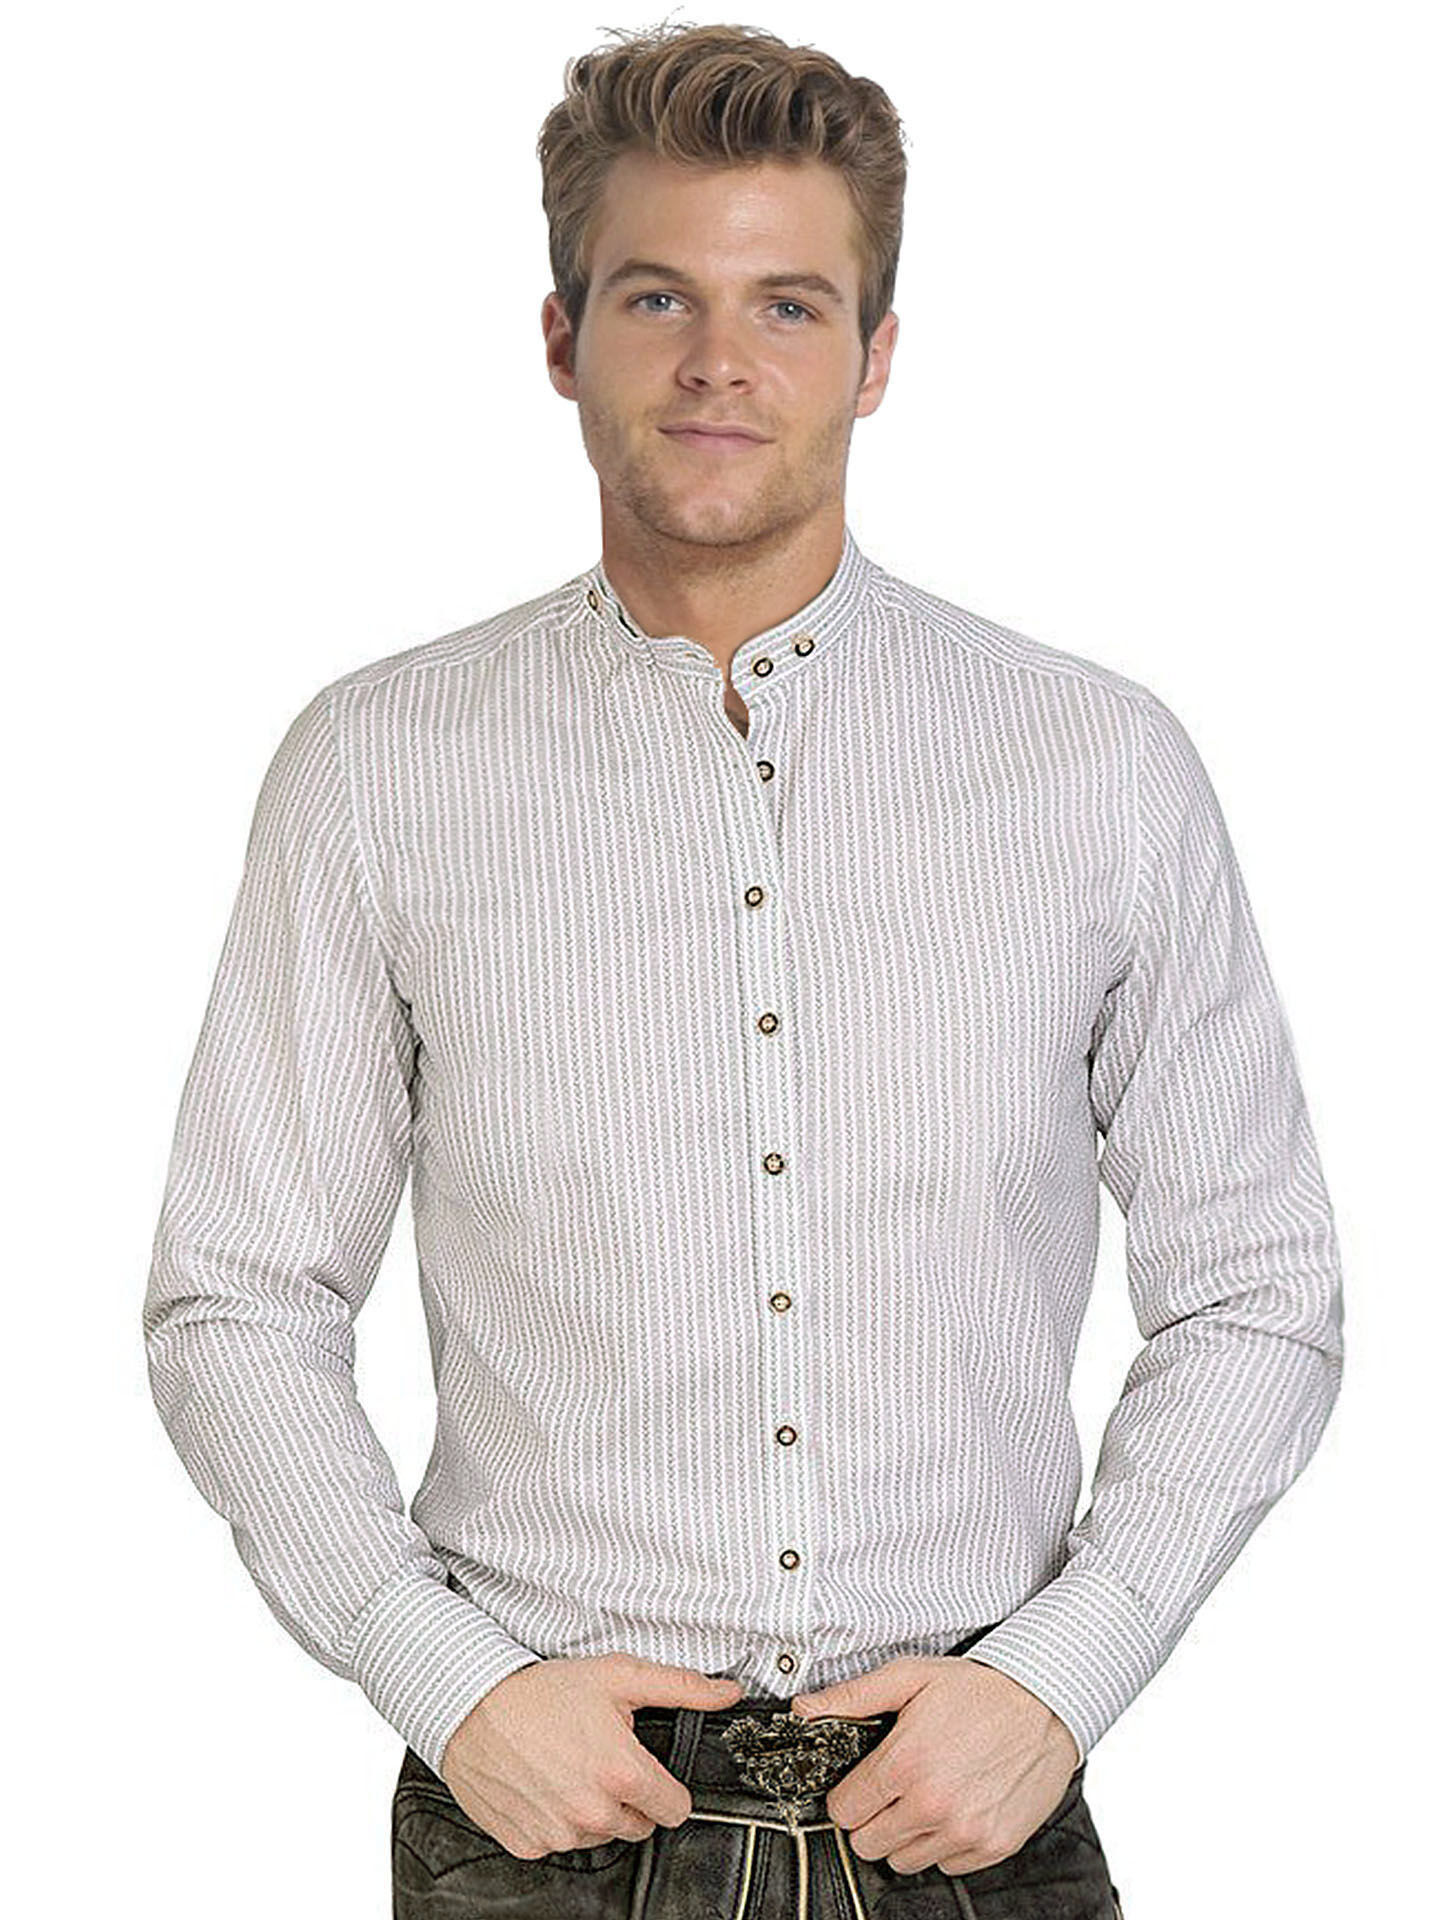 Premium Trachtenhemd Gipfelstürmer Weiß/Grau SLIMFIT Stehkragen Streifenhemd 